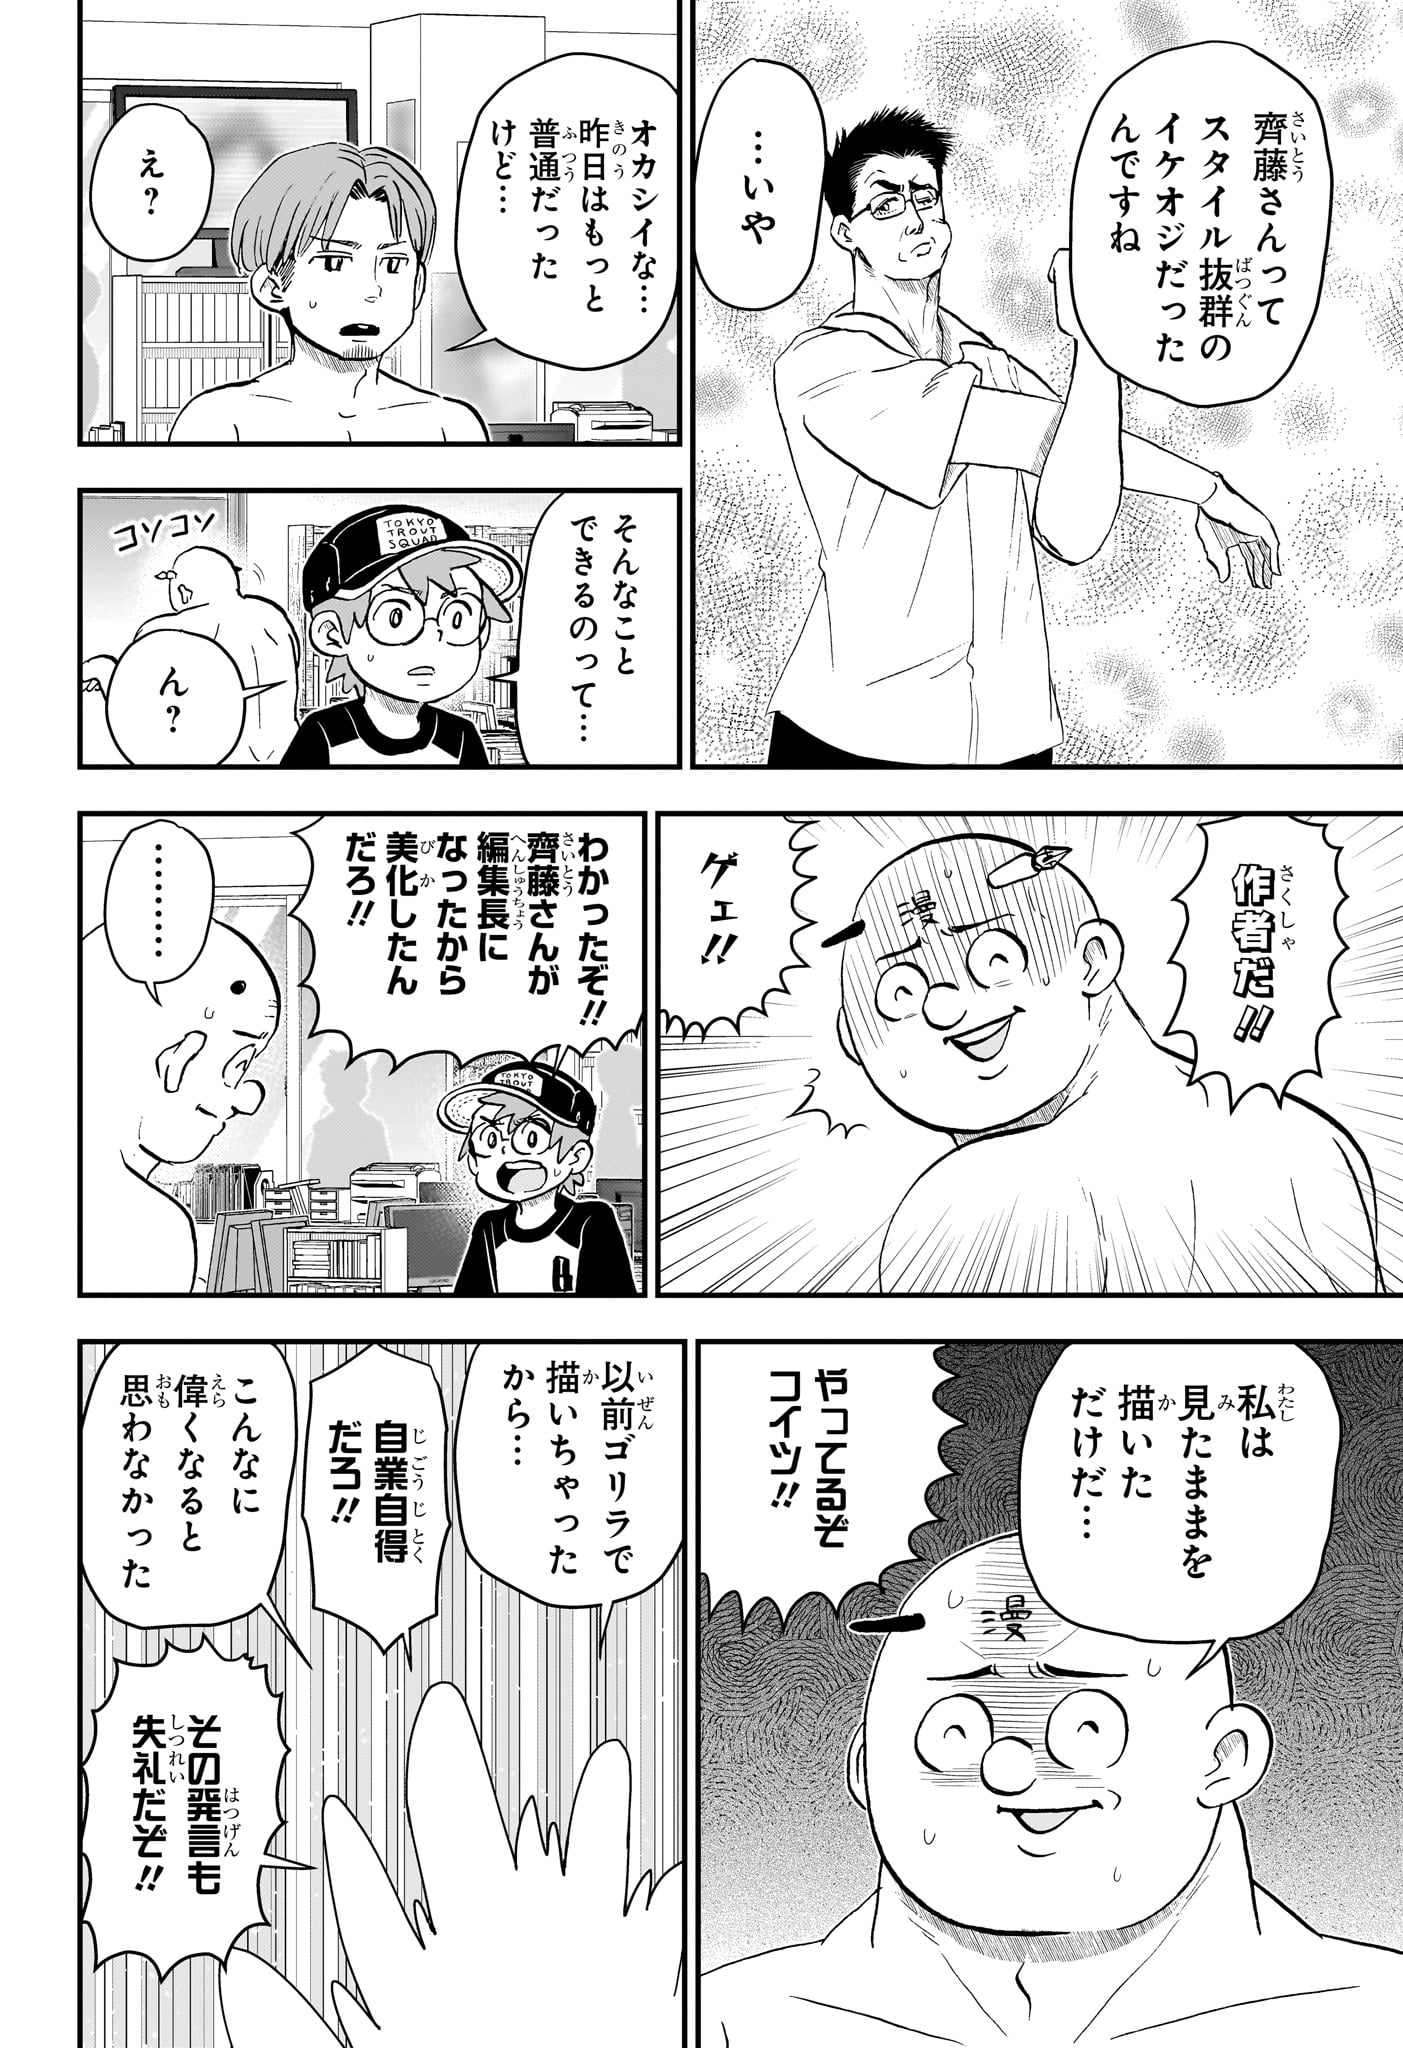 Boku to Roboko - Chapter 194 - Page 10